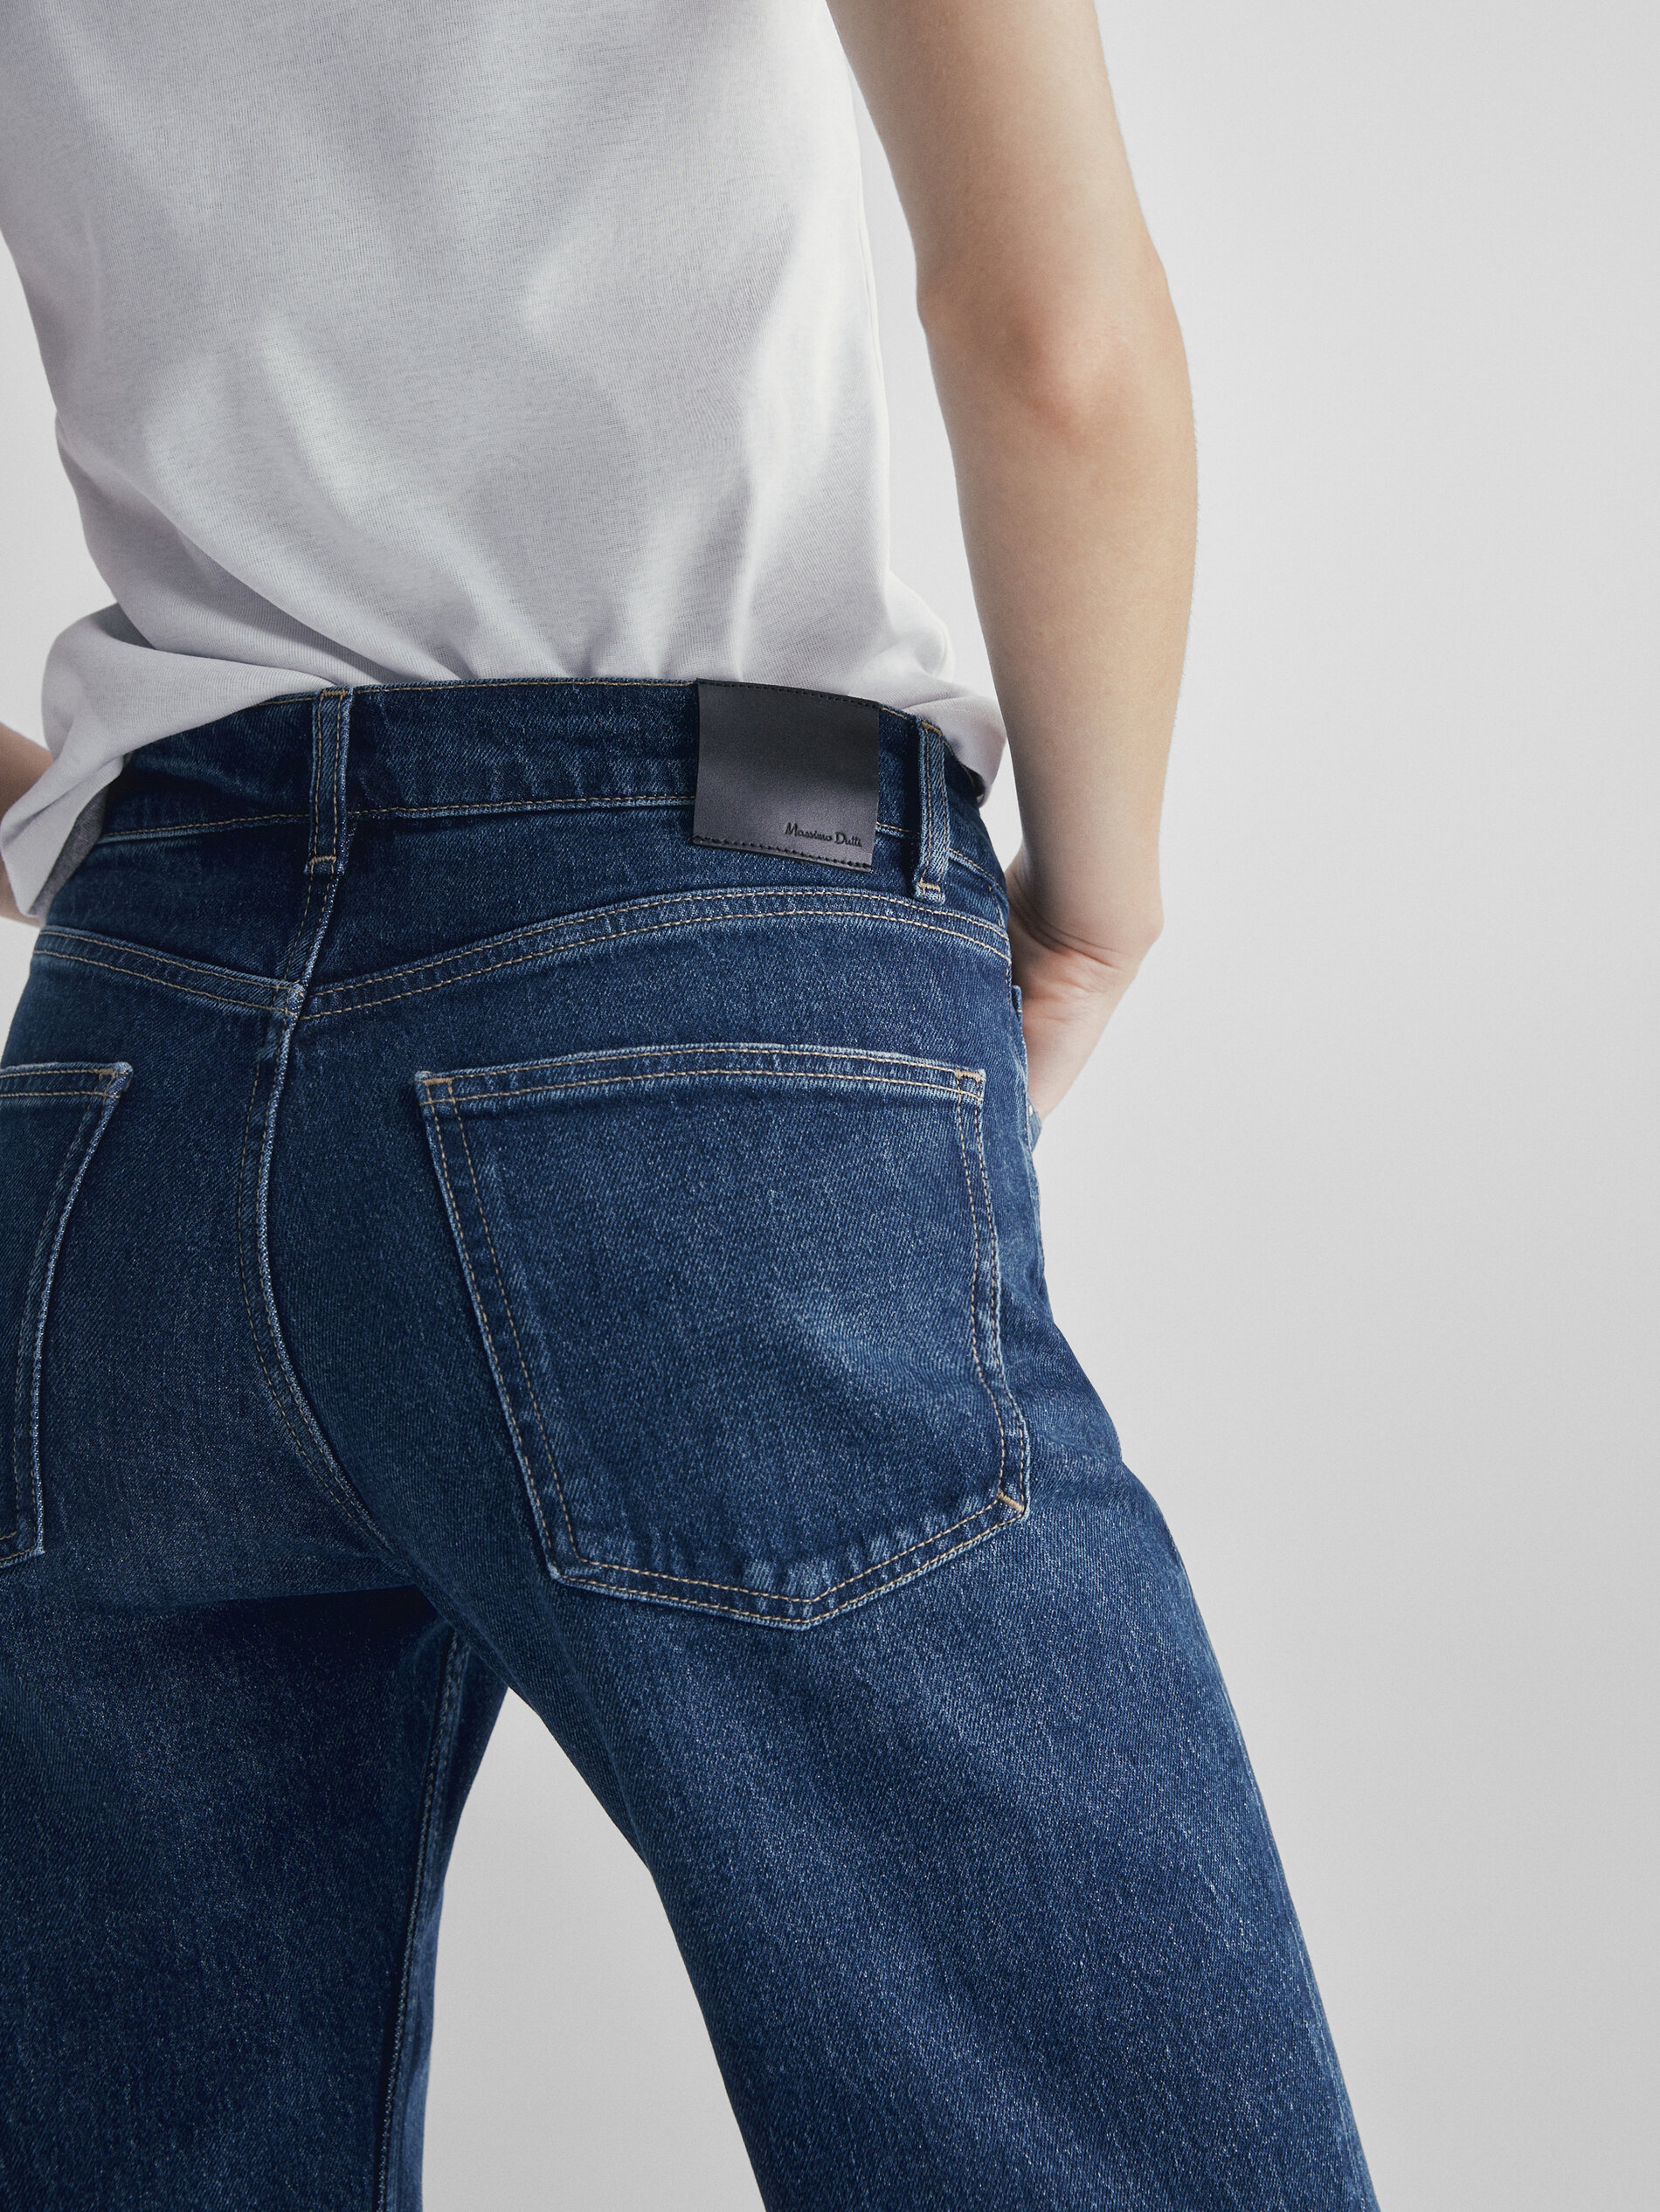 Massimo Dutti Jeans tiro medio corte recto confort